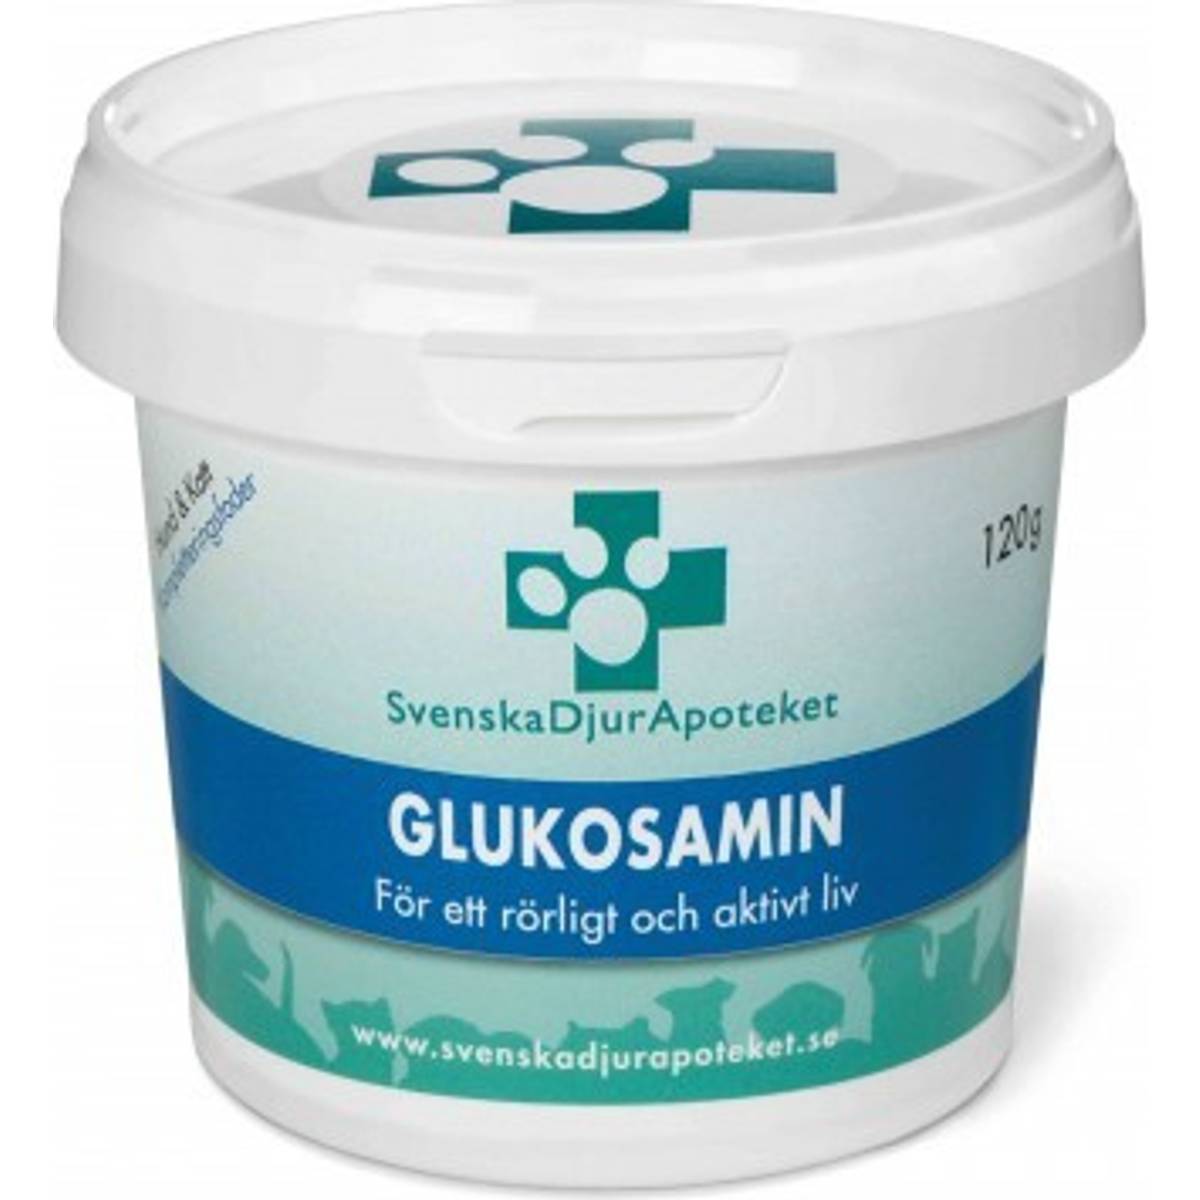 Glukosamin hund • Hitta det lägsta priset hos PriceRunner nu